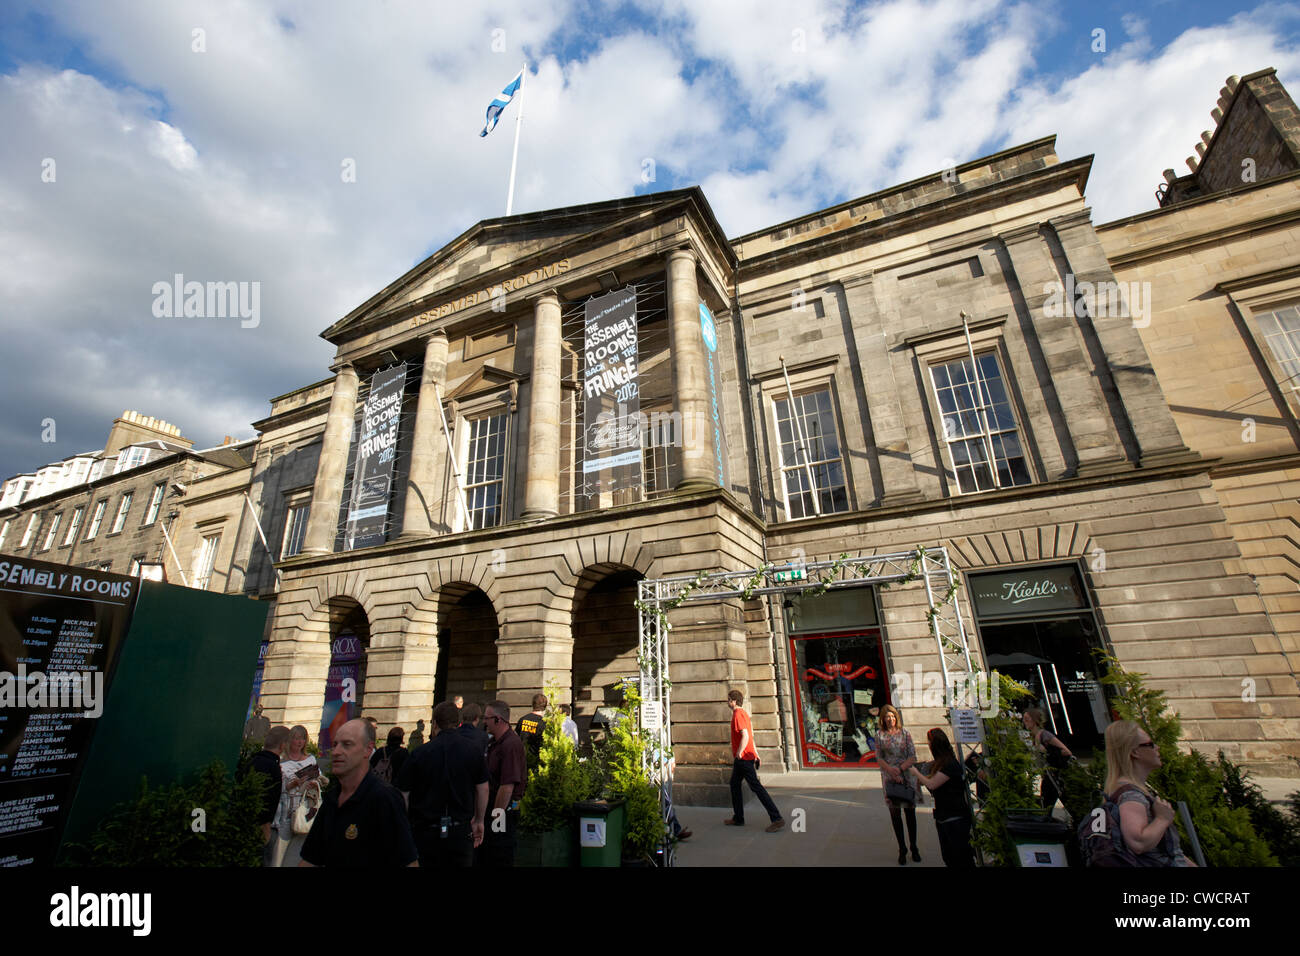 Die Versammlungsräume George Street Edinburgh Festival fringe Veranstaltungsort Schottland Großbritannien Vereinigtes Königreich Stockfoto